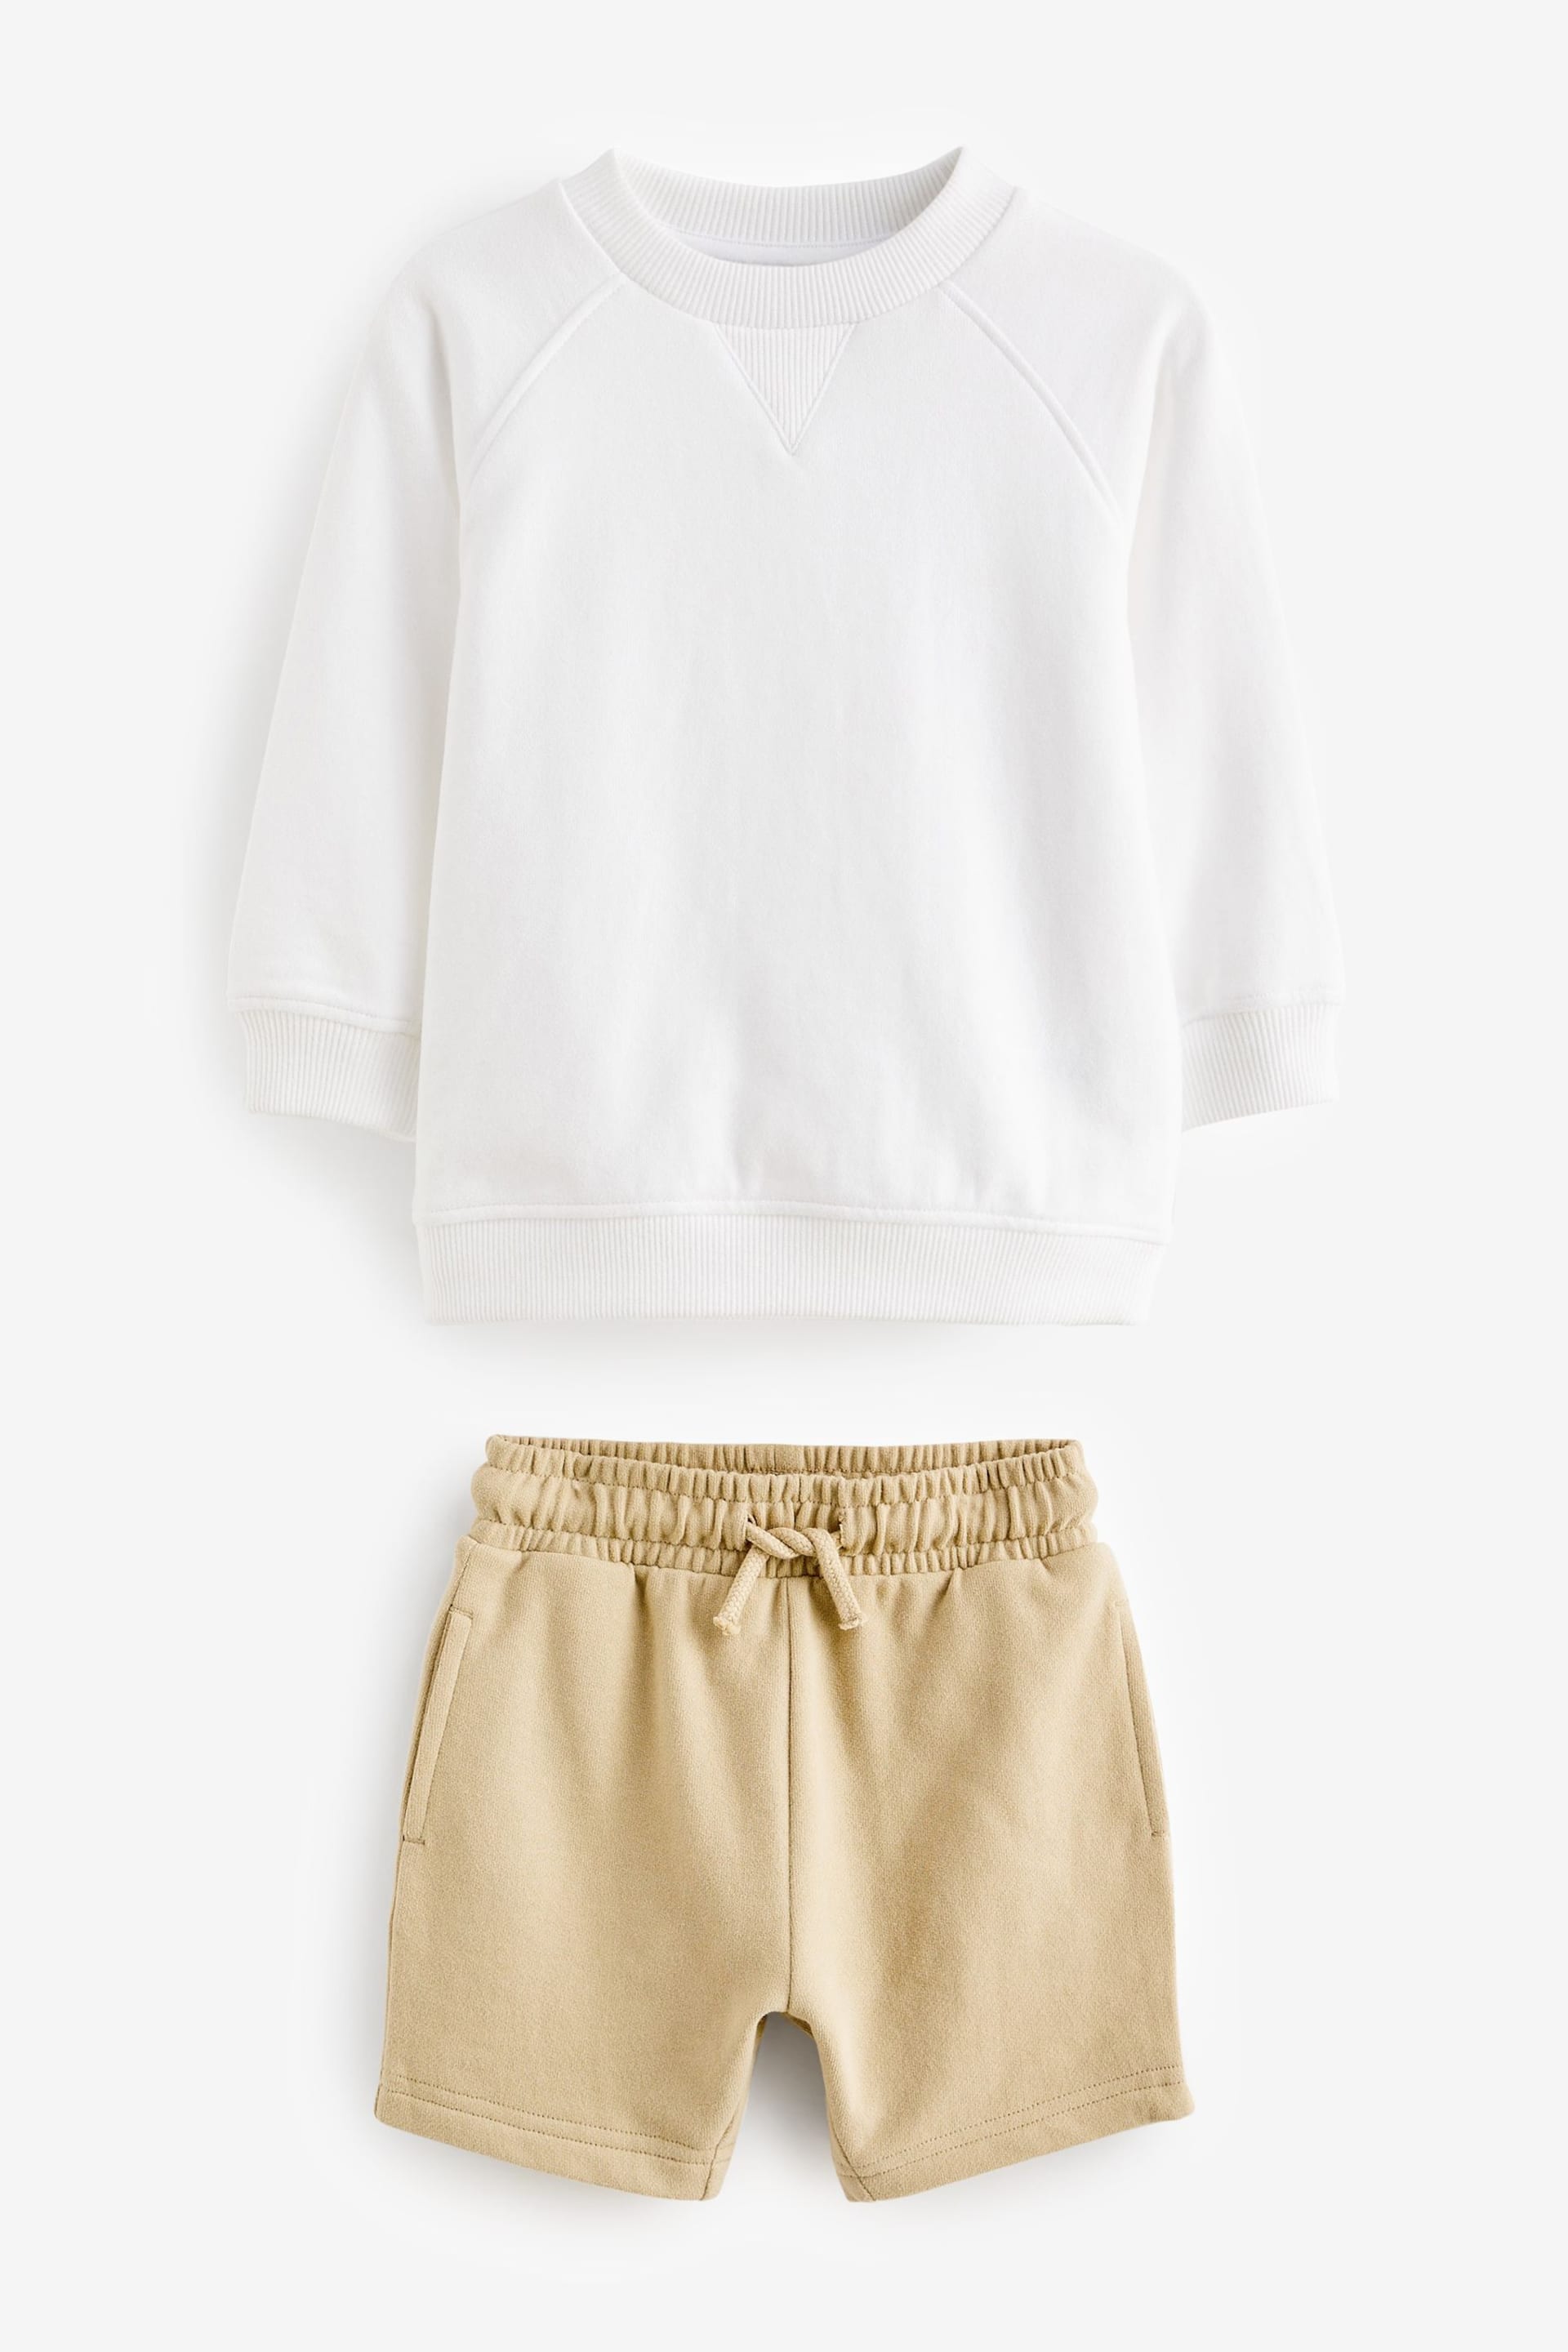 Ecru Off White Oversized Sweatshirt and Shorts Set (3mths-7yrs) - Image 7 of 9